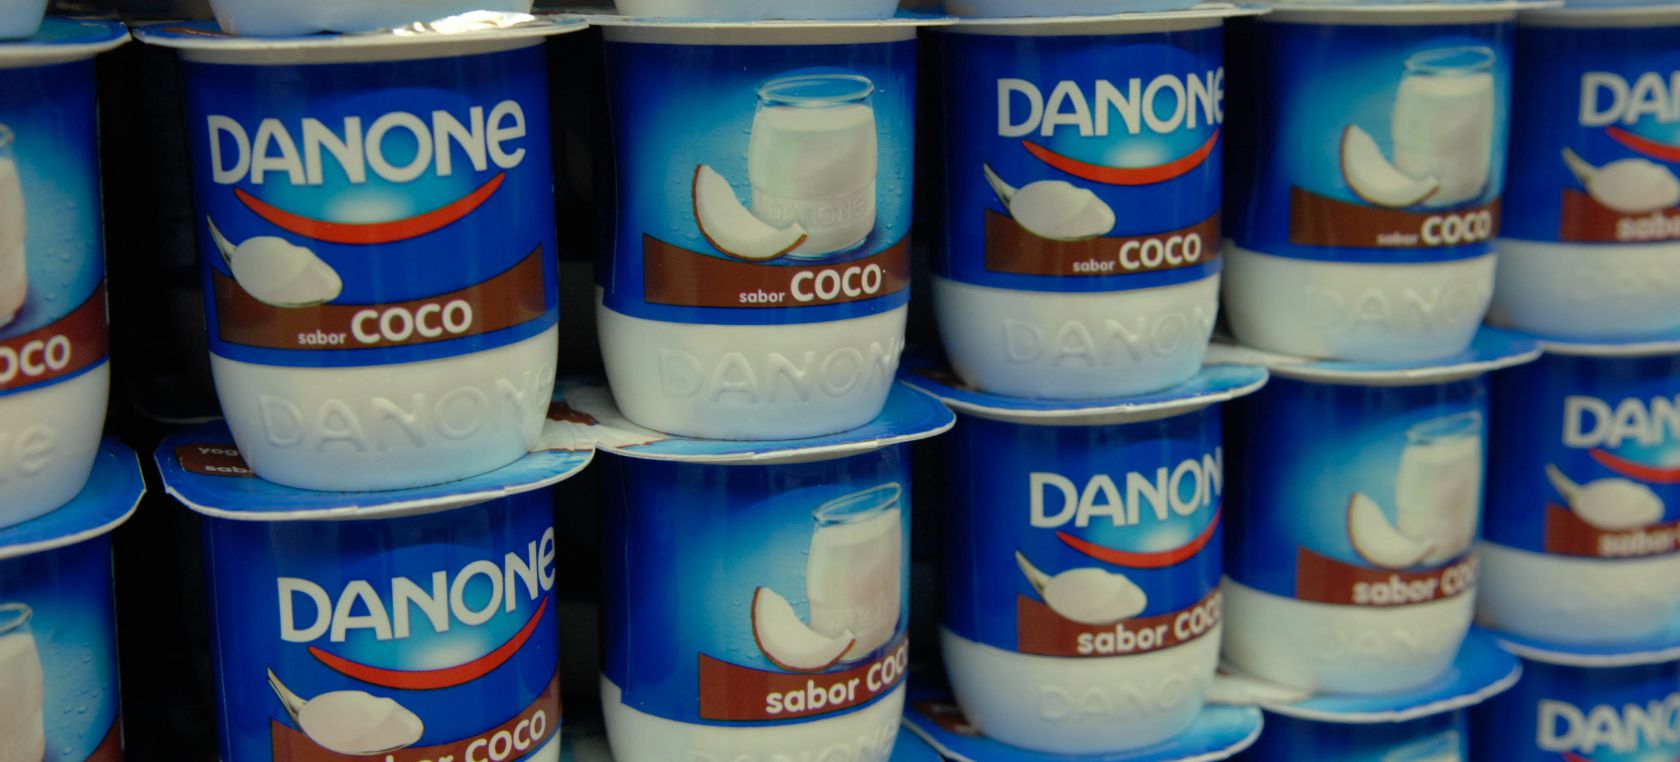 Adiós a la fecha de caducidad de los yogures: Danone la eliminará este 2021